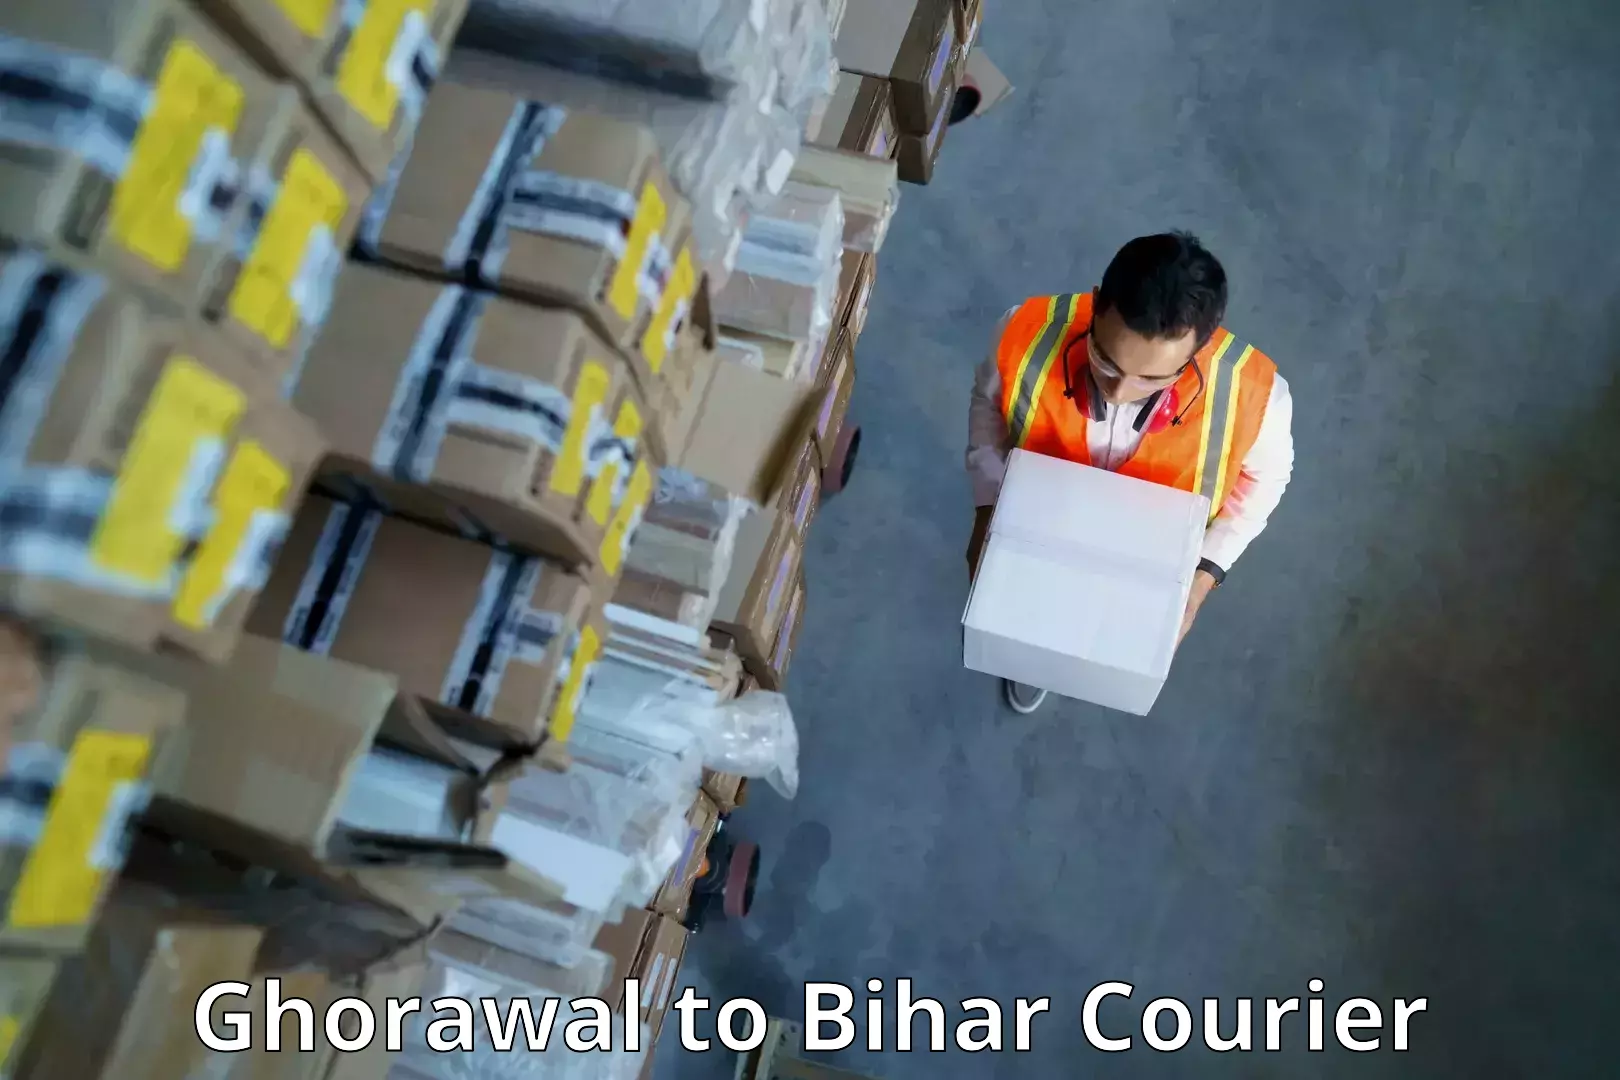 Doorstep delivery service Ghorawal to Bihar